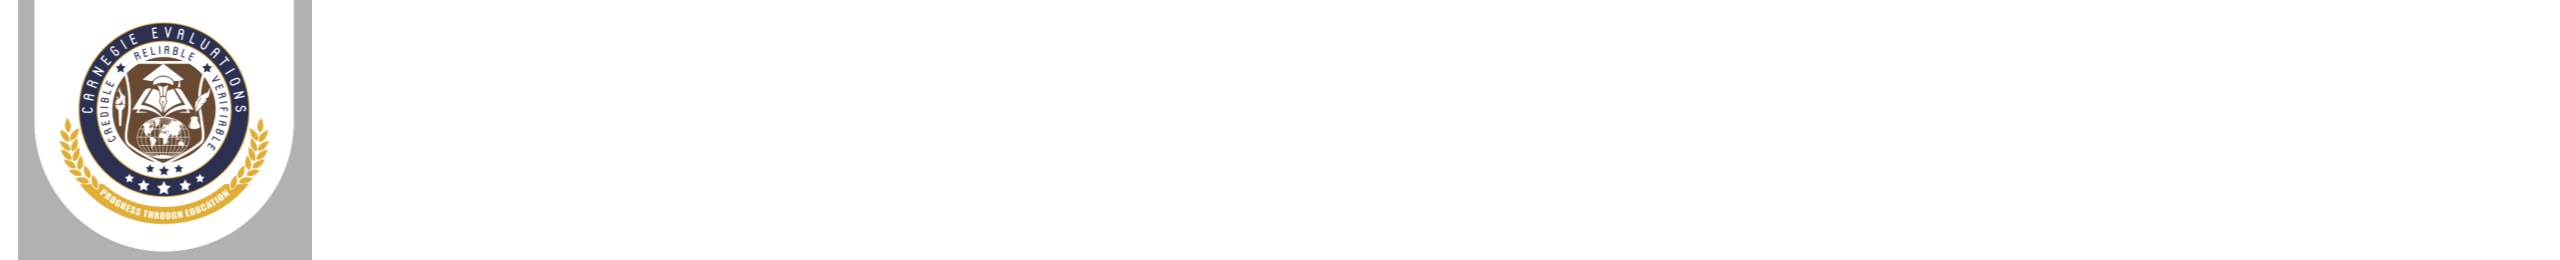 carnegie logo.png